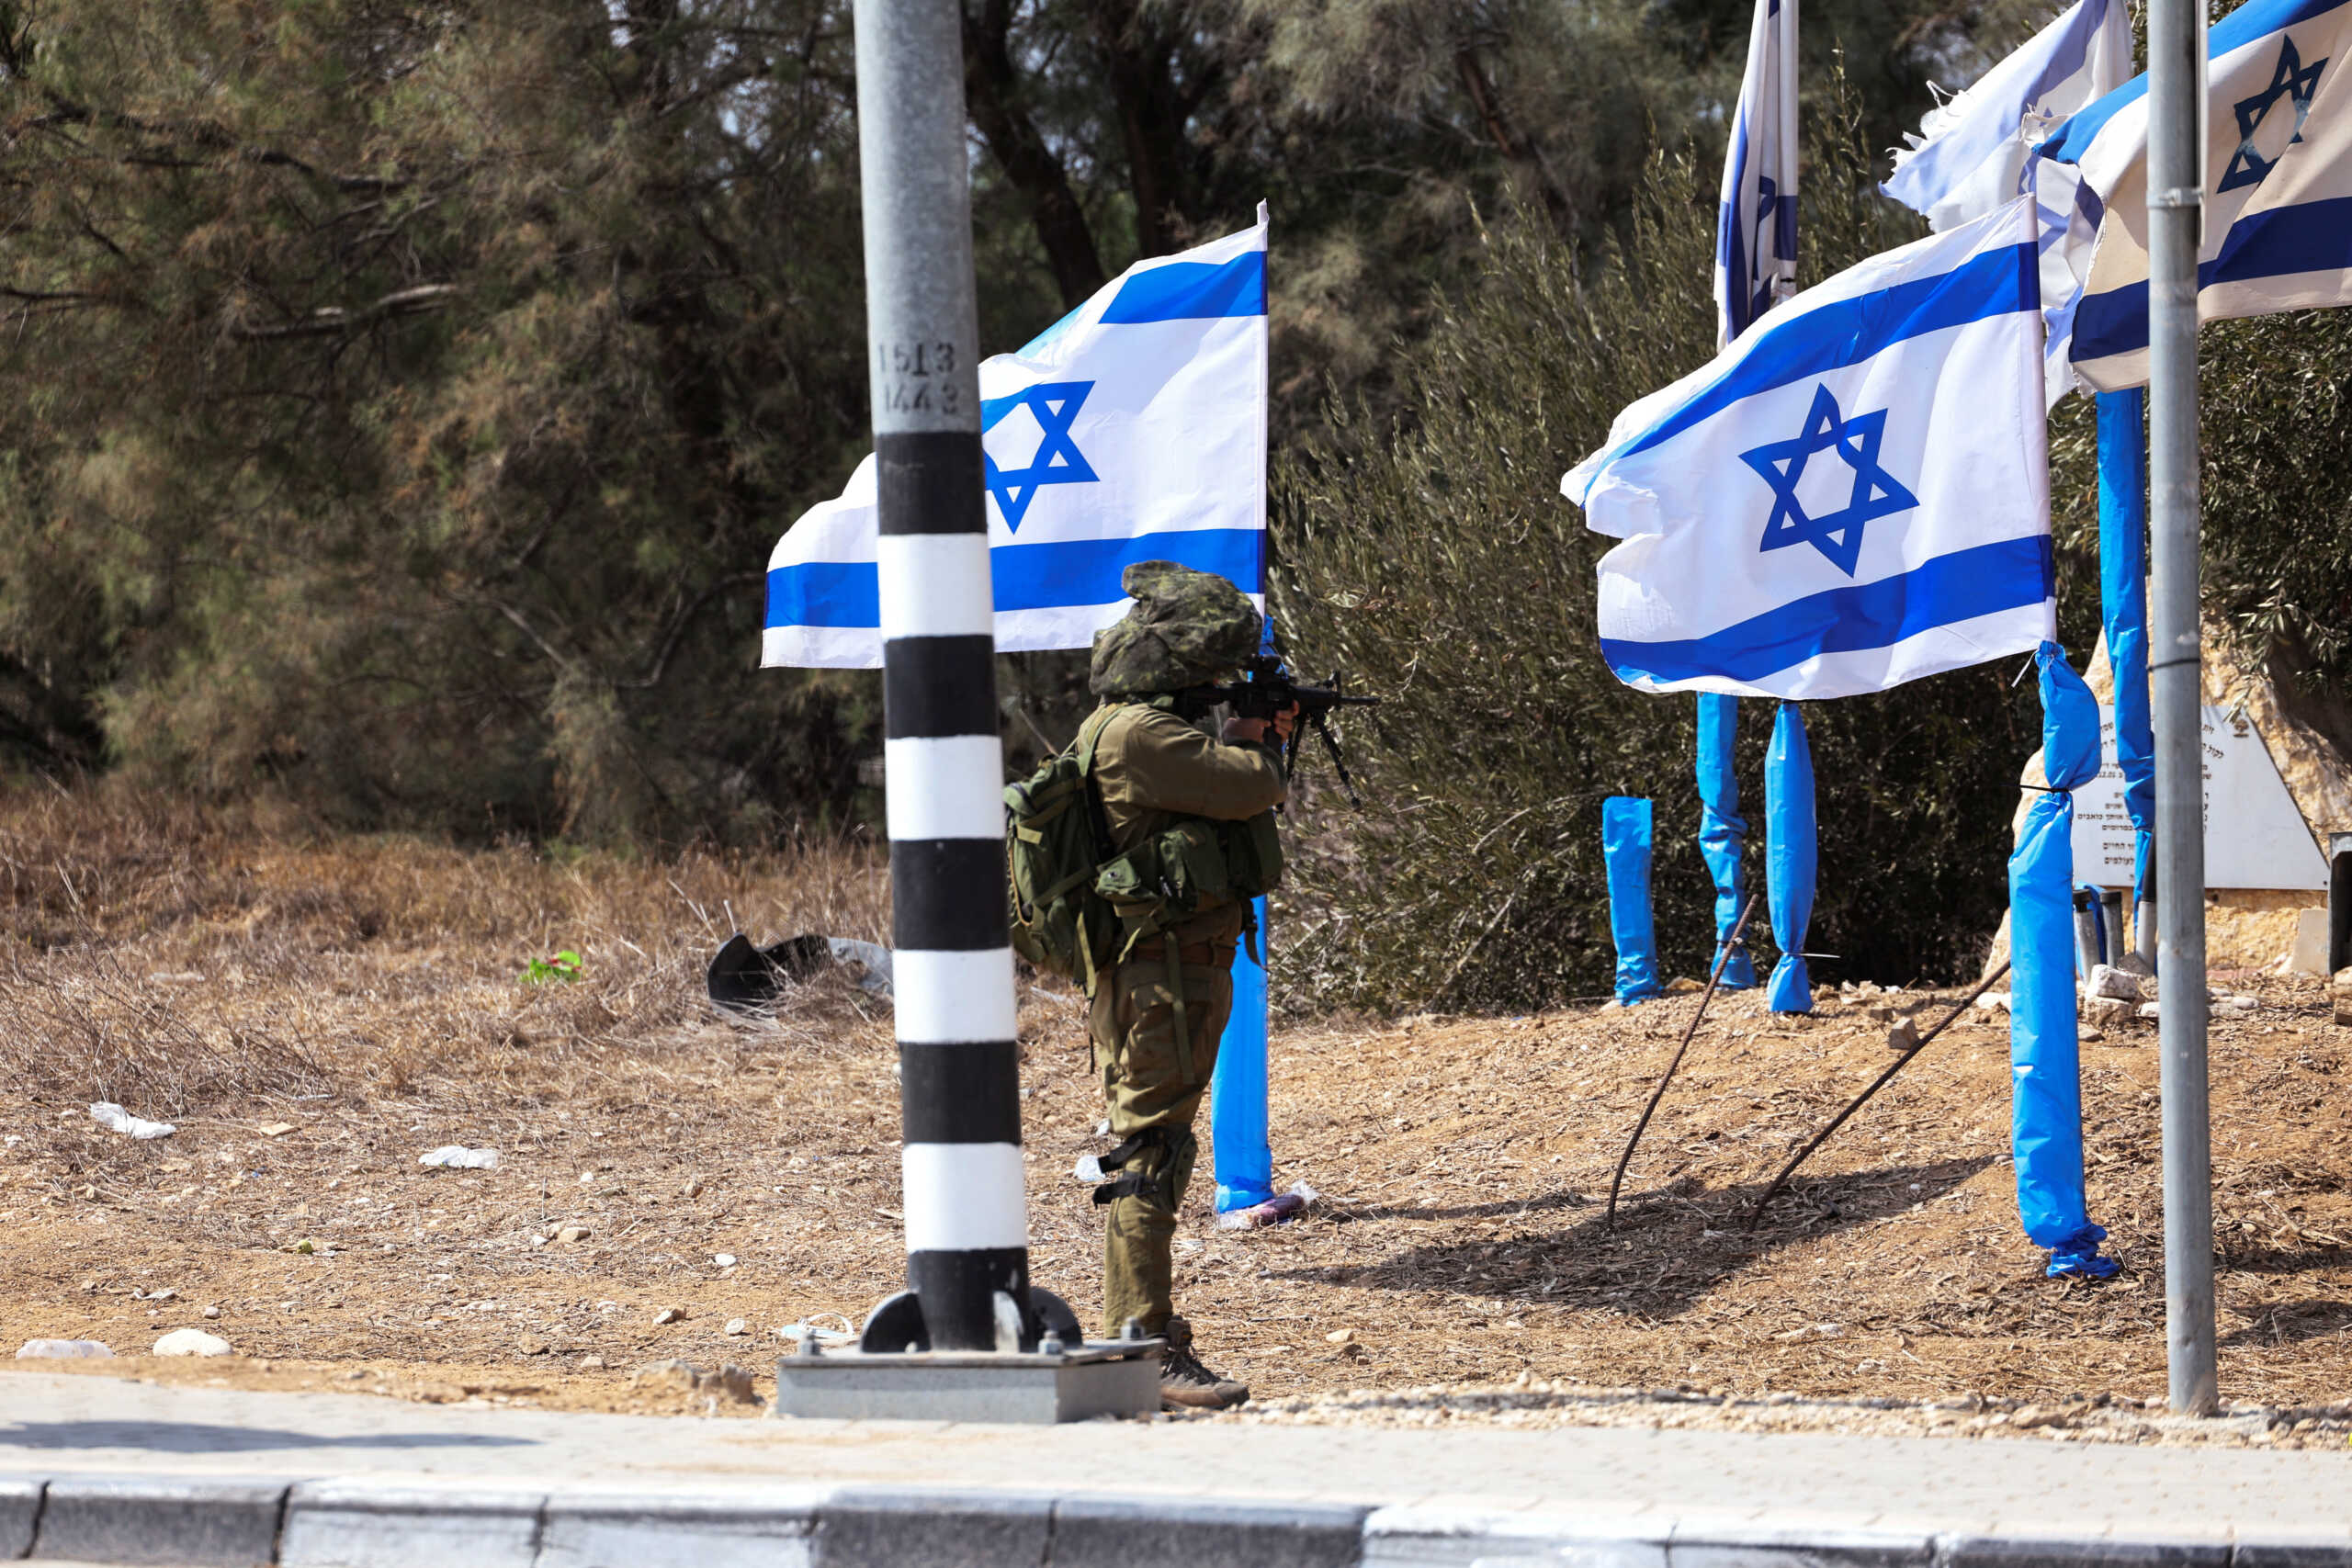 Πόλεμος στο Ισραήλ: Αποκαταστάθηκε ο έλεγχος στα σύνορα με τη Γάζα – Τοποθετεί νάρκες ο Ισραηλινός στρατός